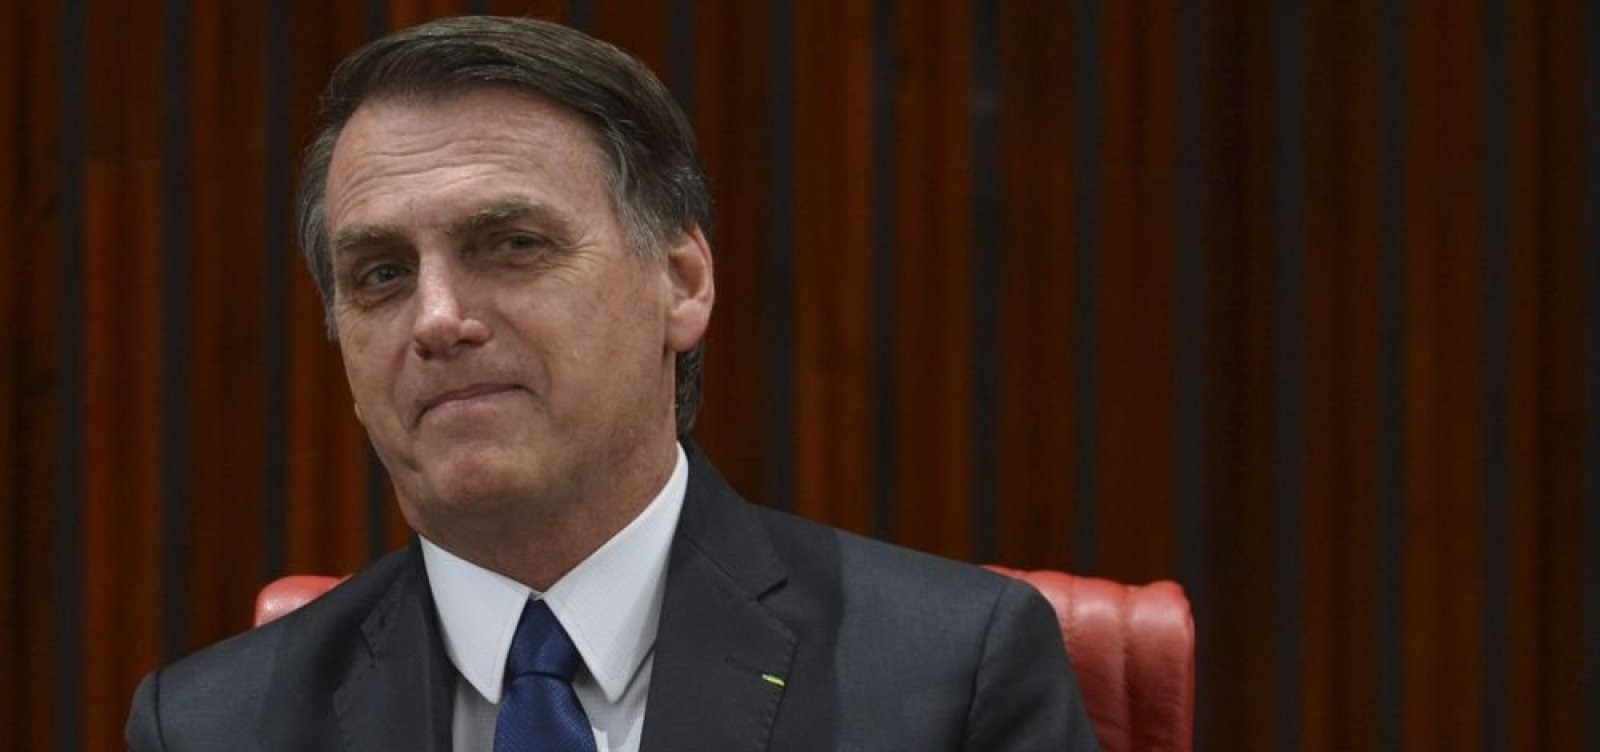 Partidos cobram definição de Bolsonaro sobre operadores no Congresso